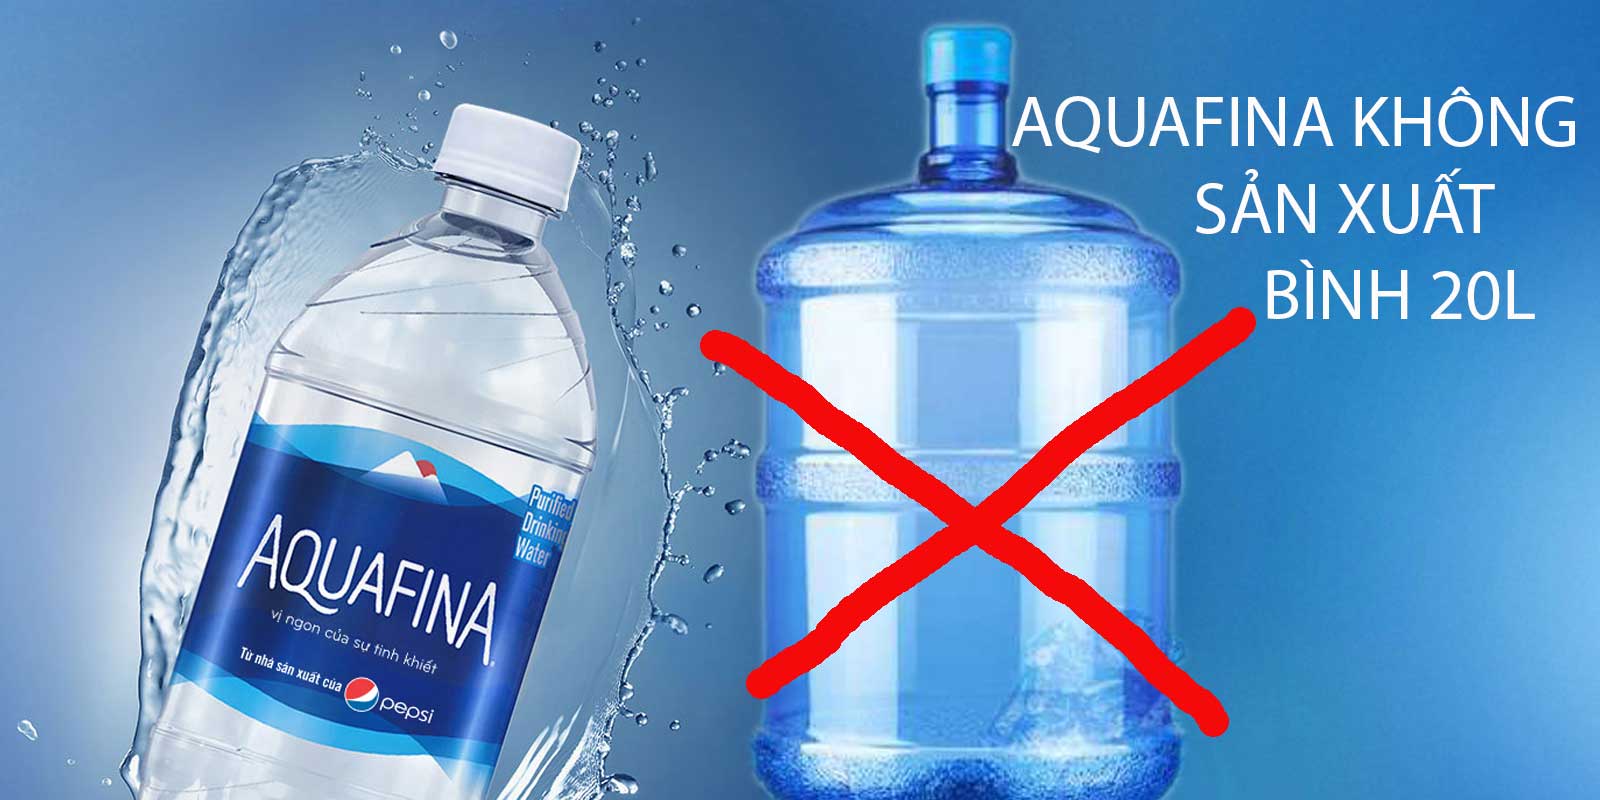 Aquafina không sản xuất bình 20L tại Việt Nam